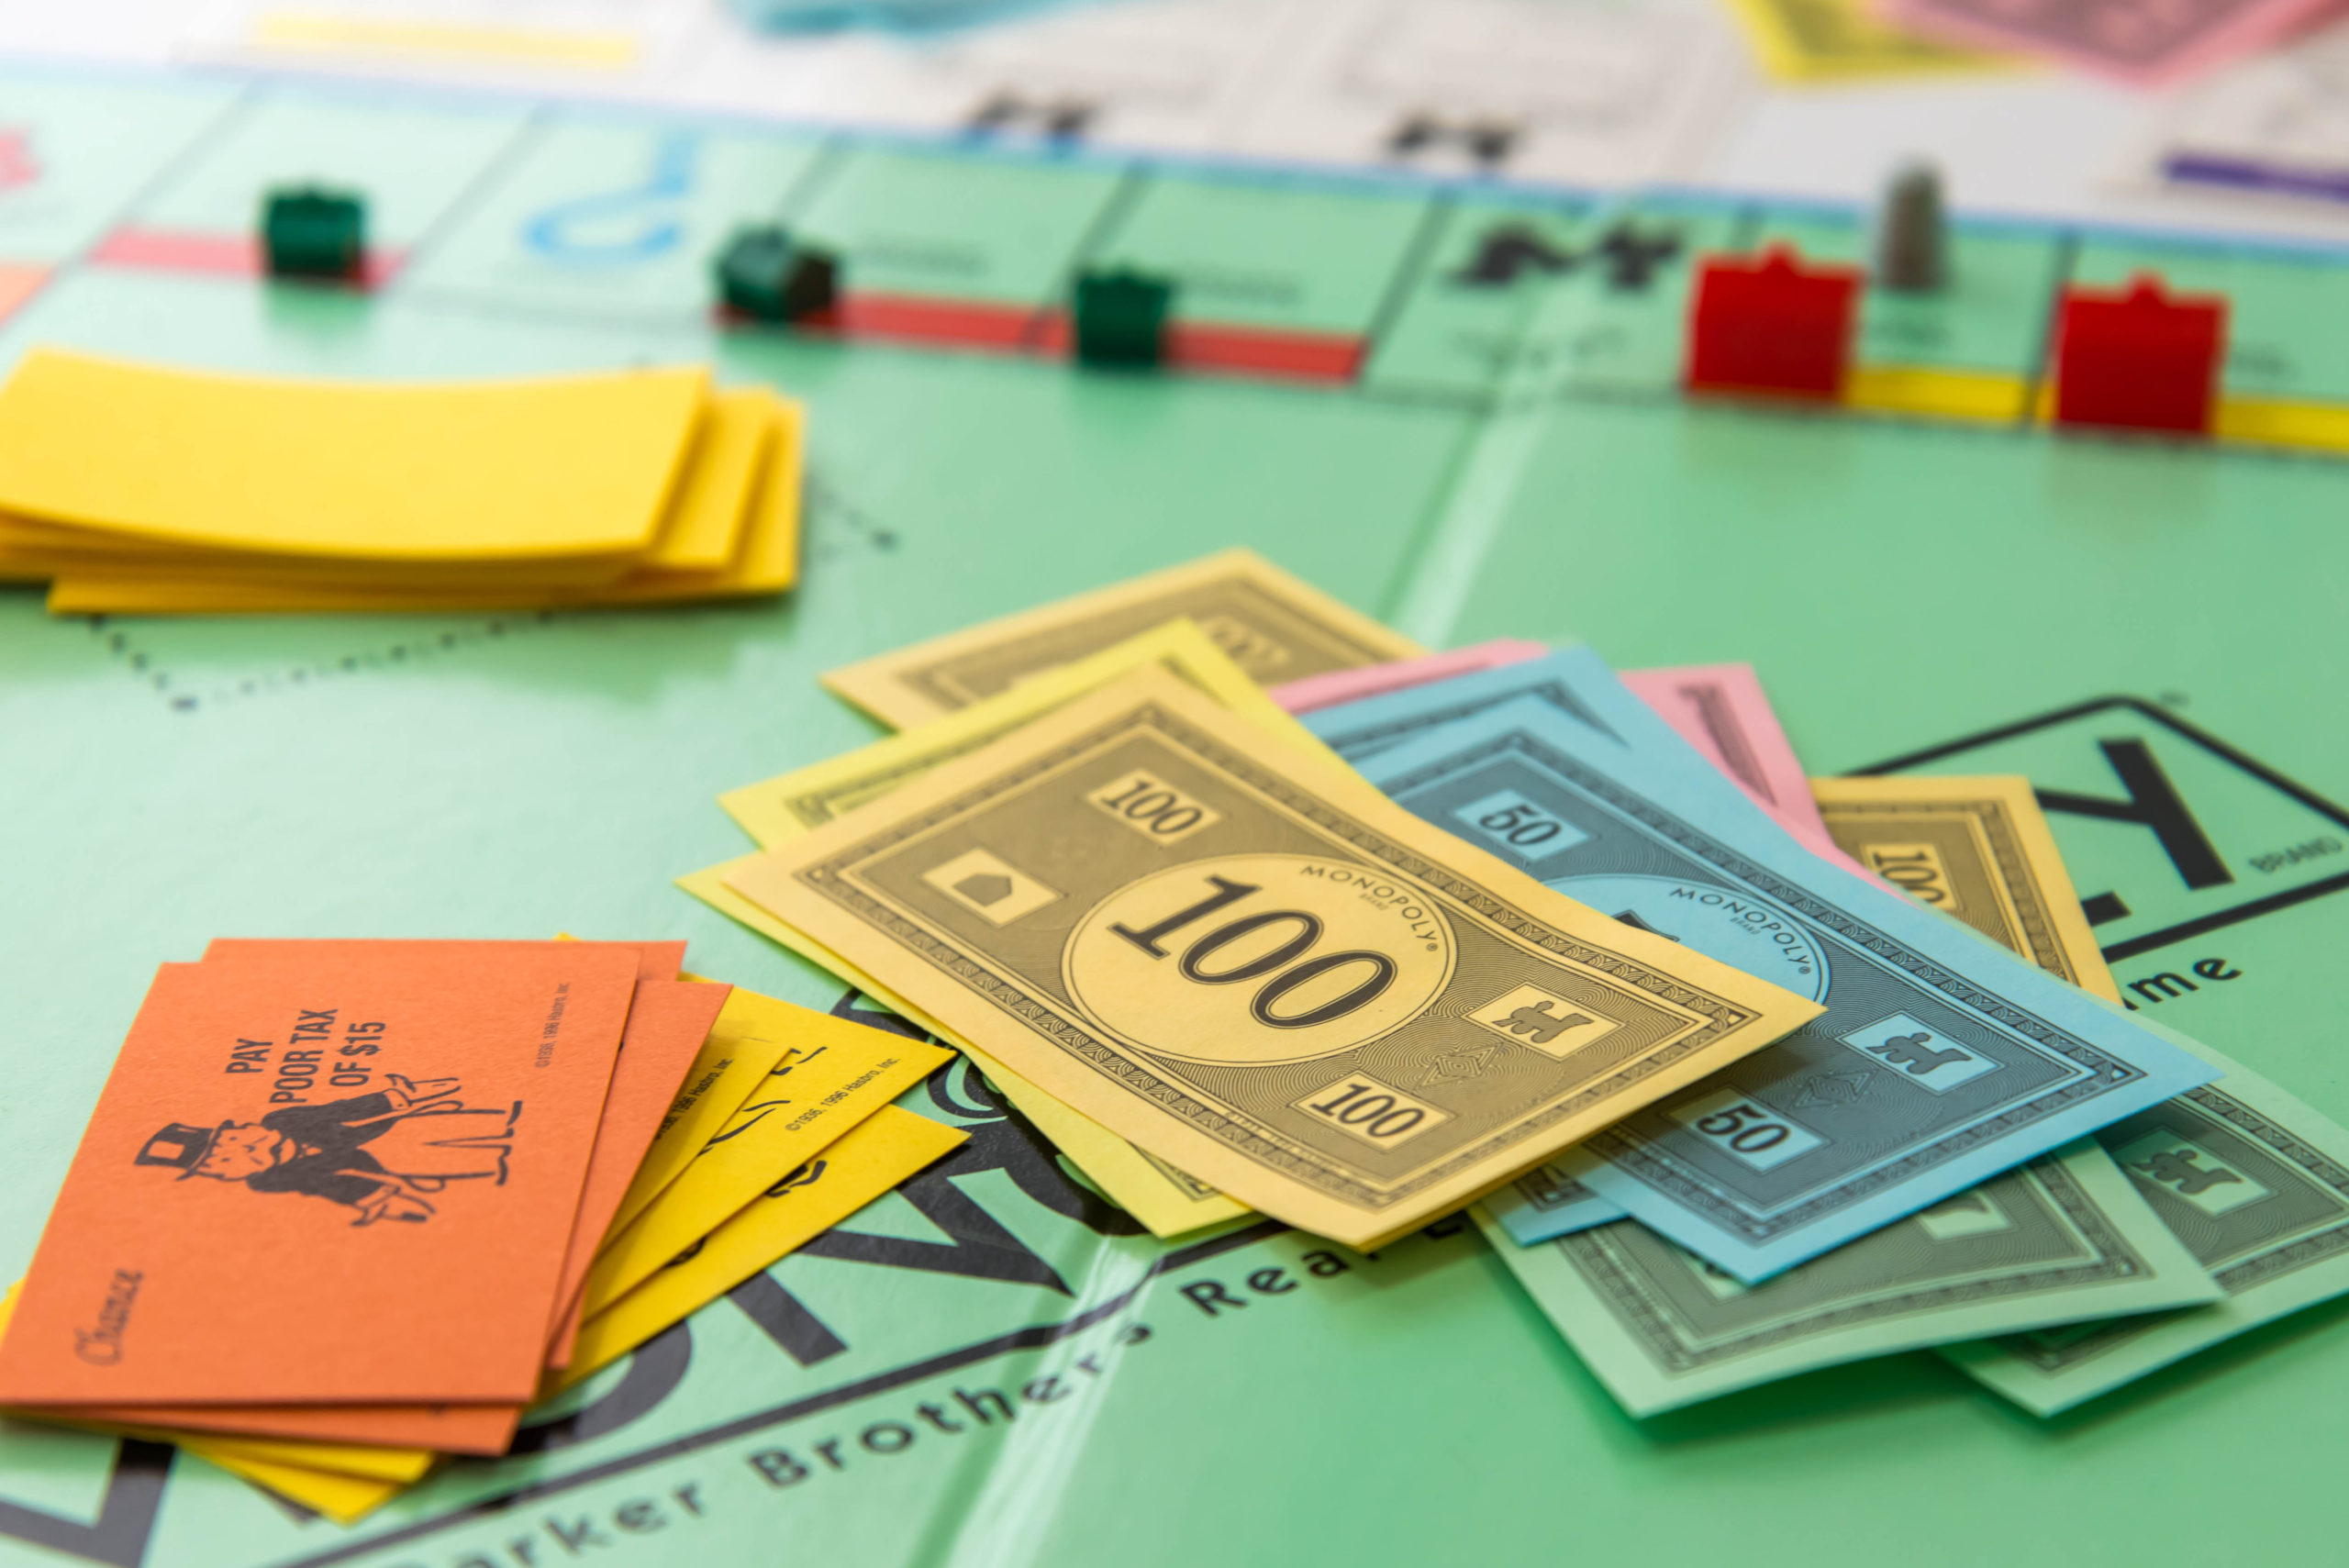 Everyday economics and monopoly games